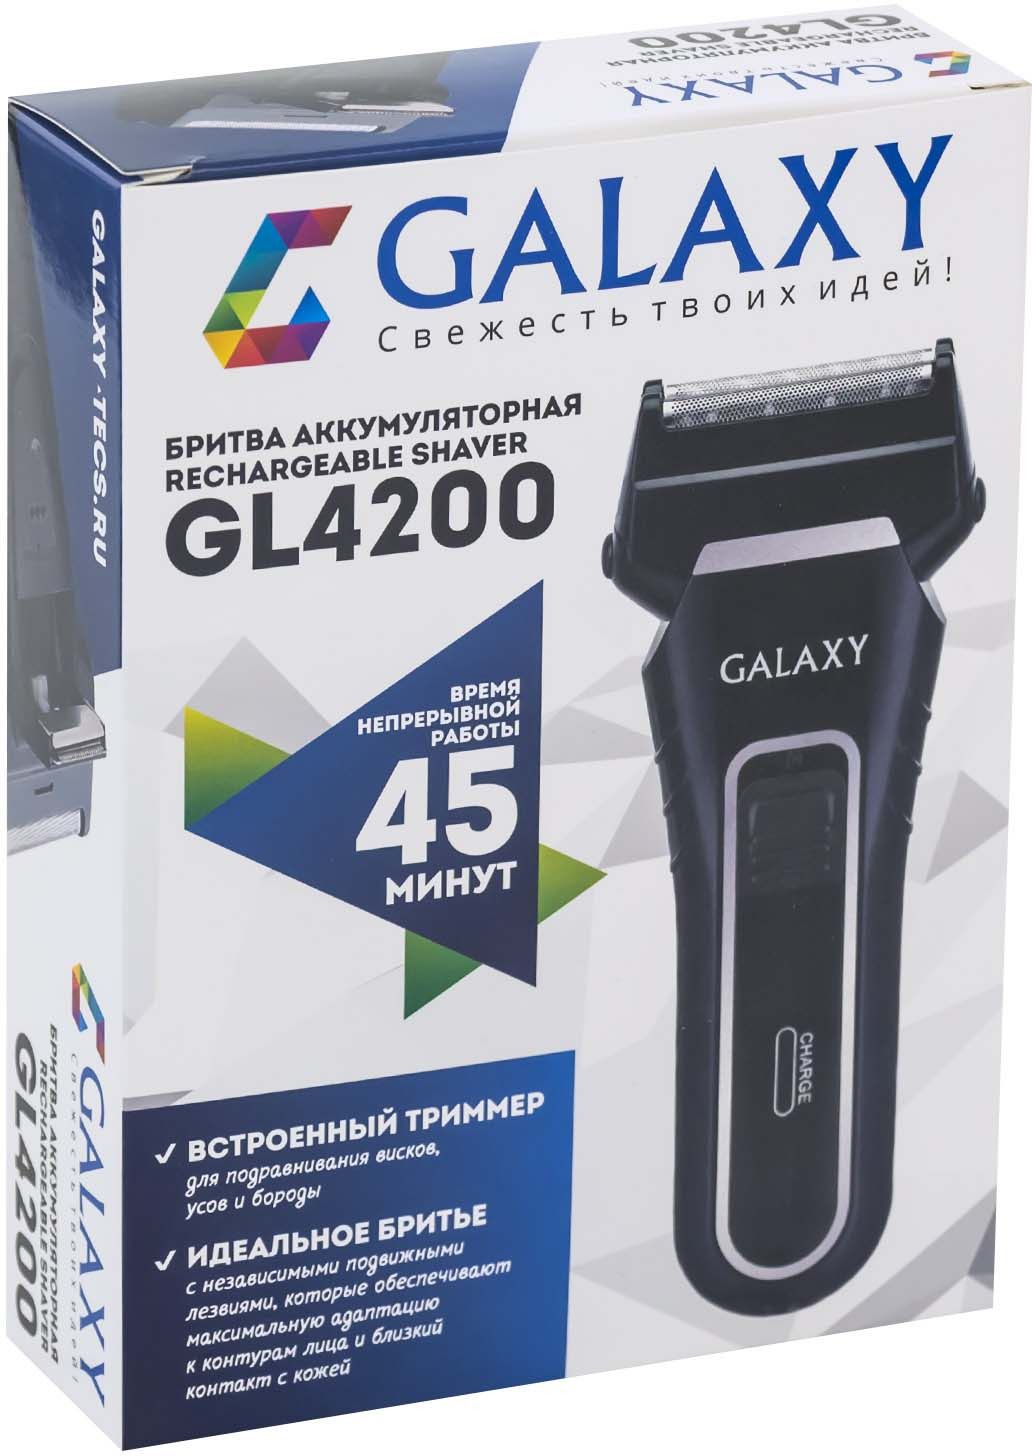  Galaxy GL 4200, : 